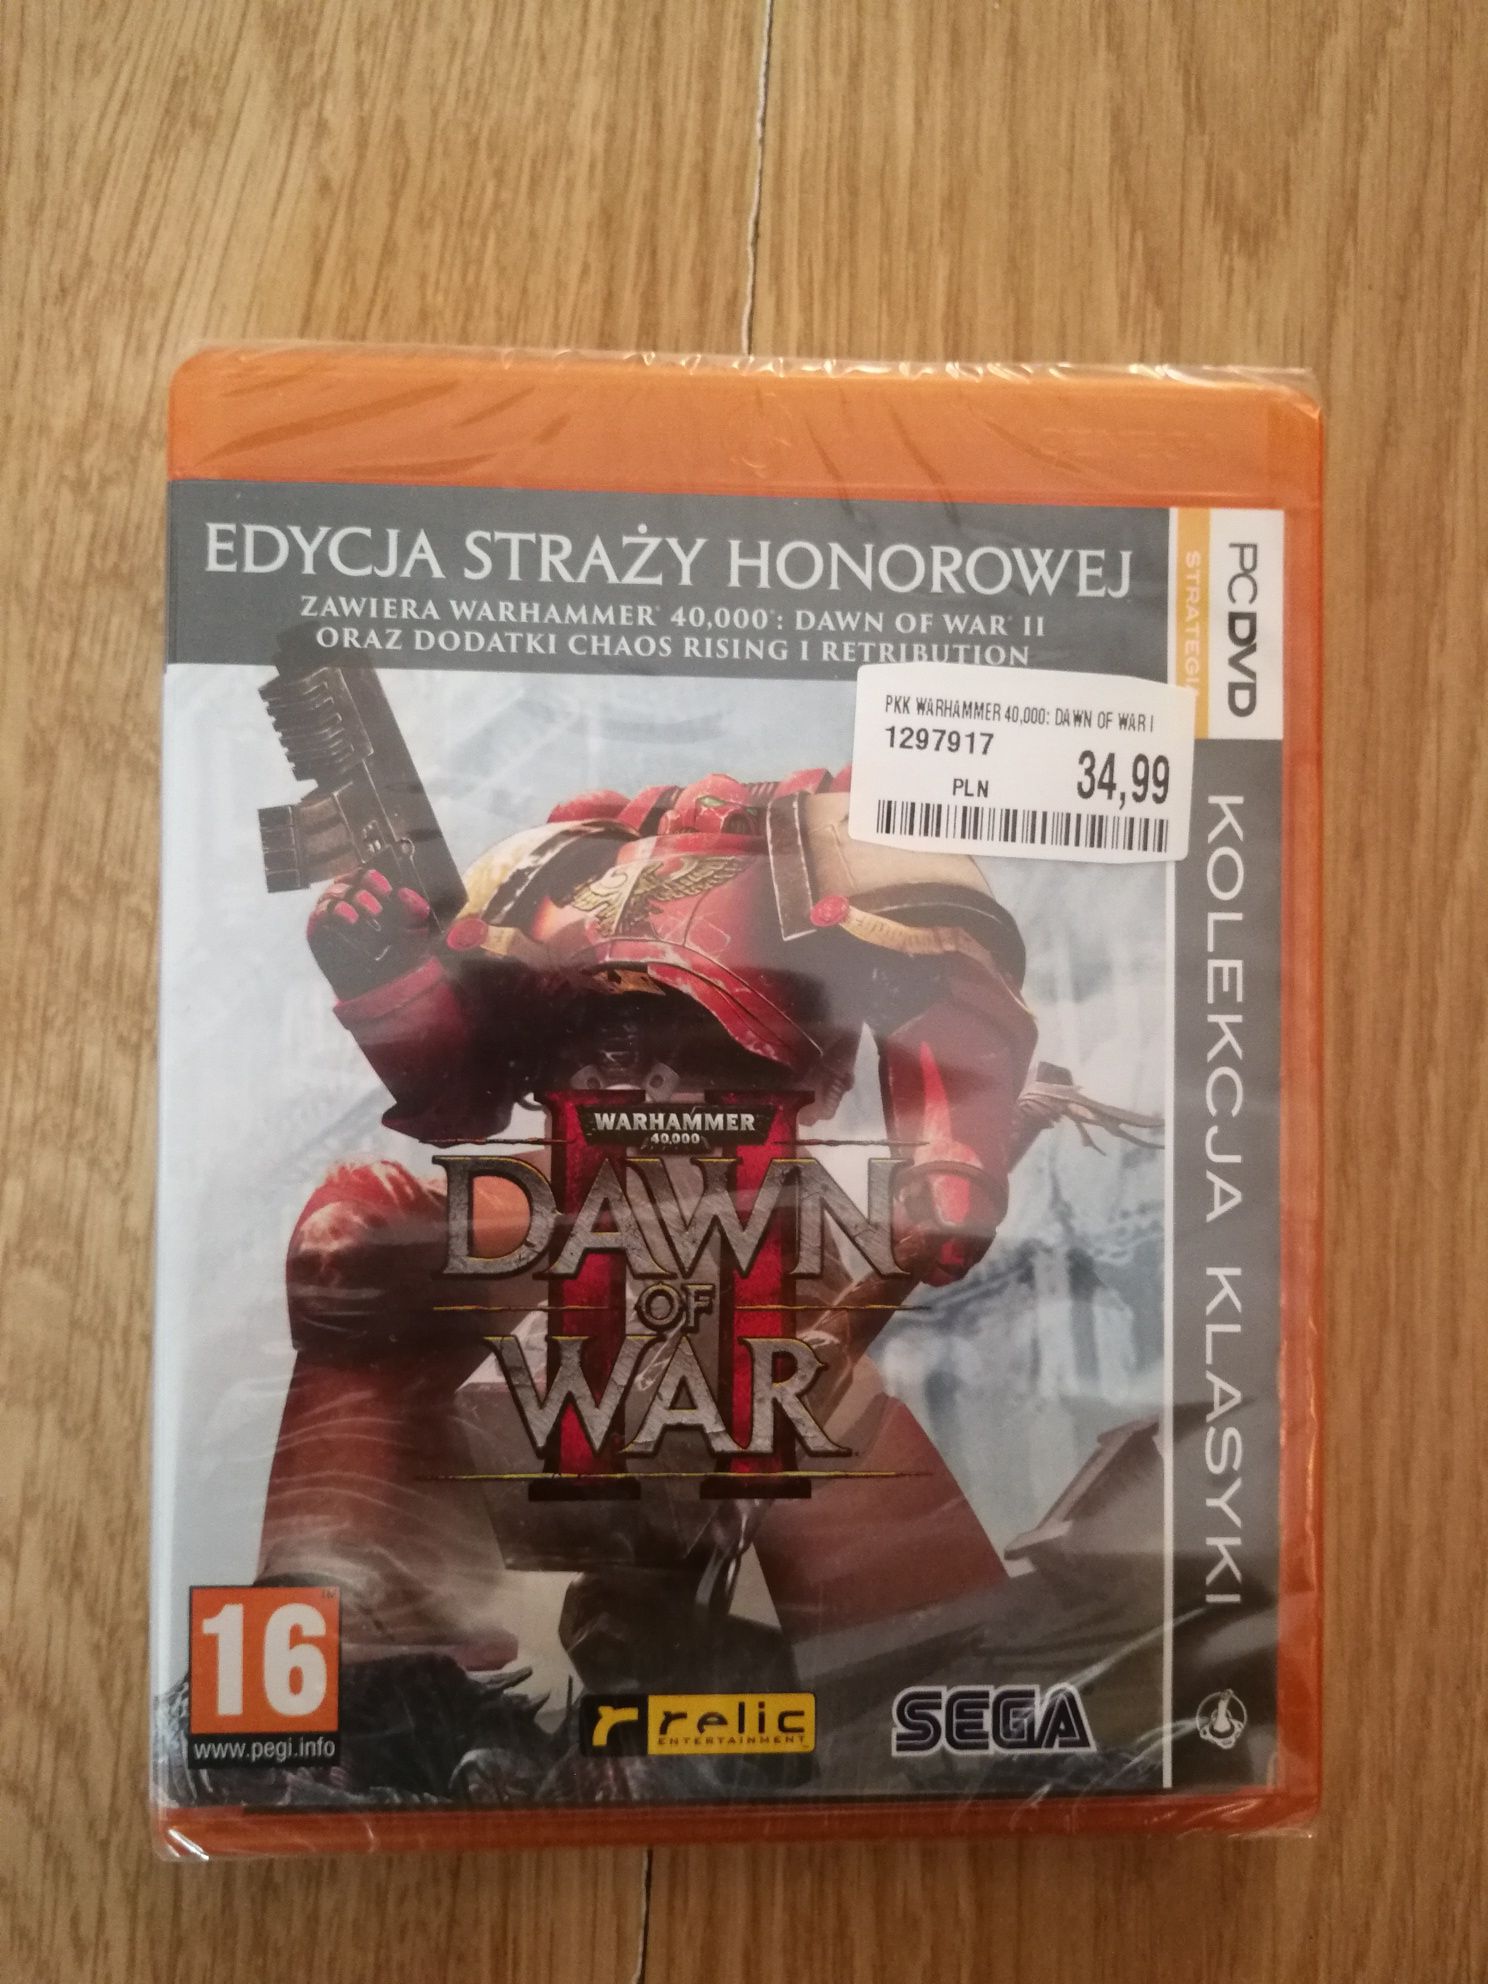 Warhammer 40,000: Dawn of War 2 - Edycja Straży Honorowej